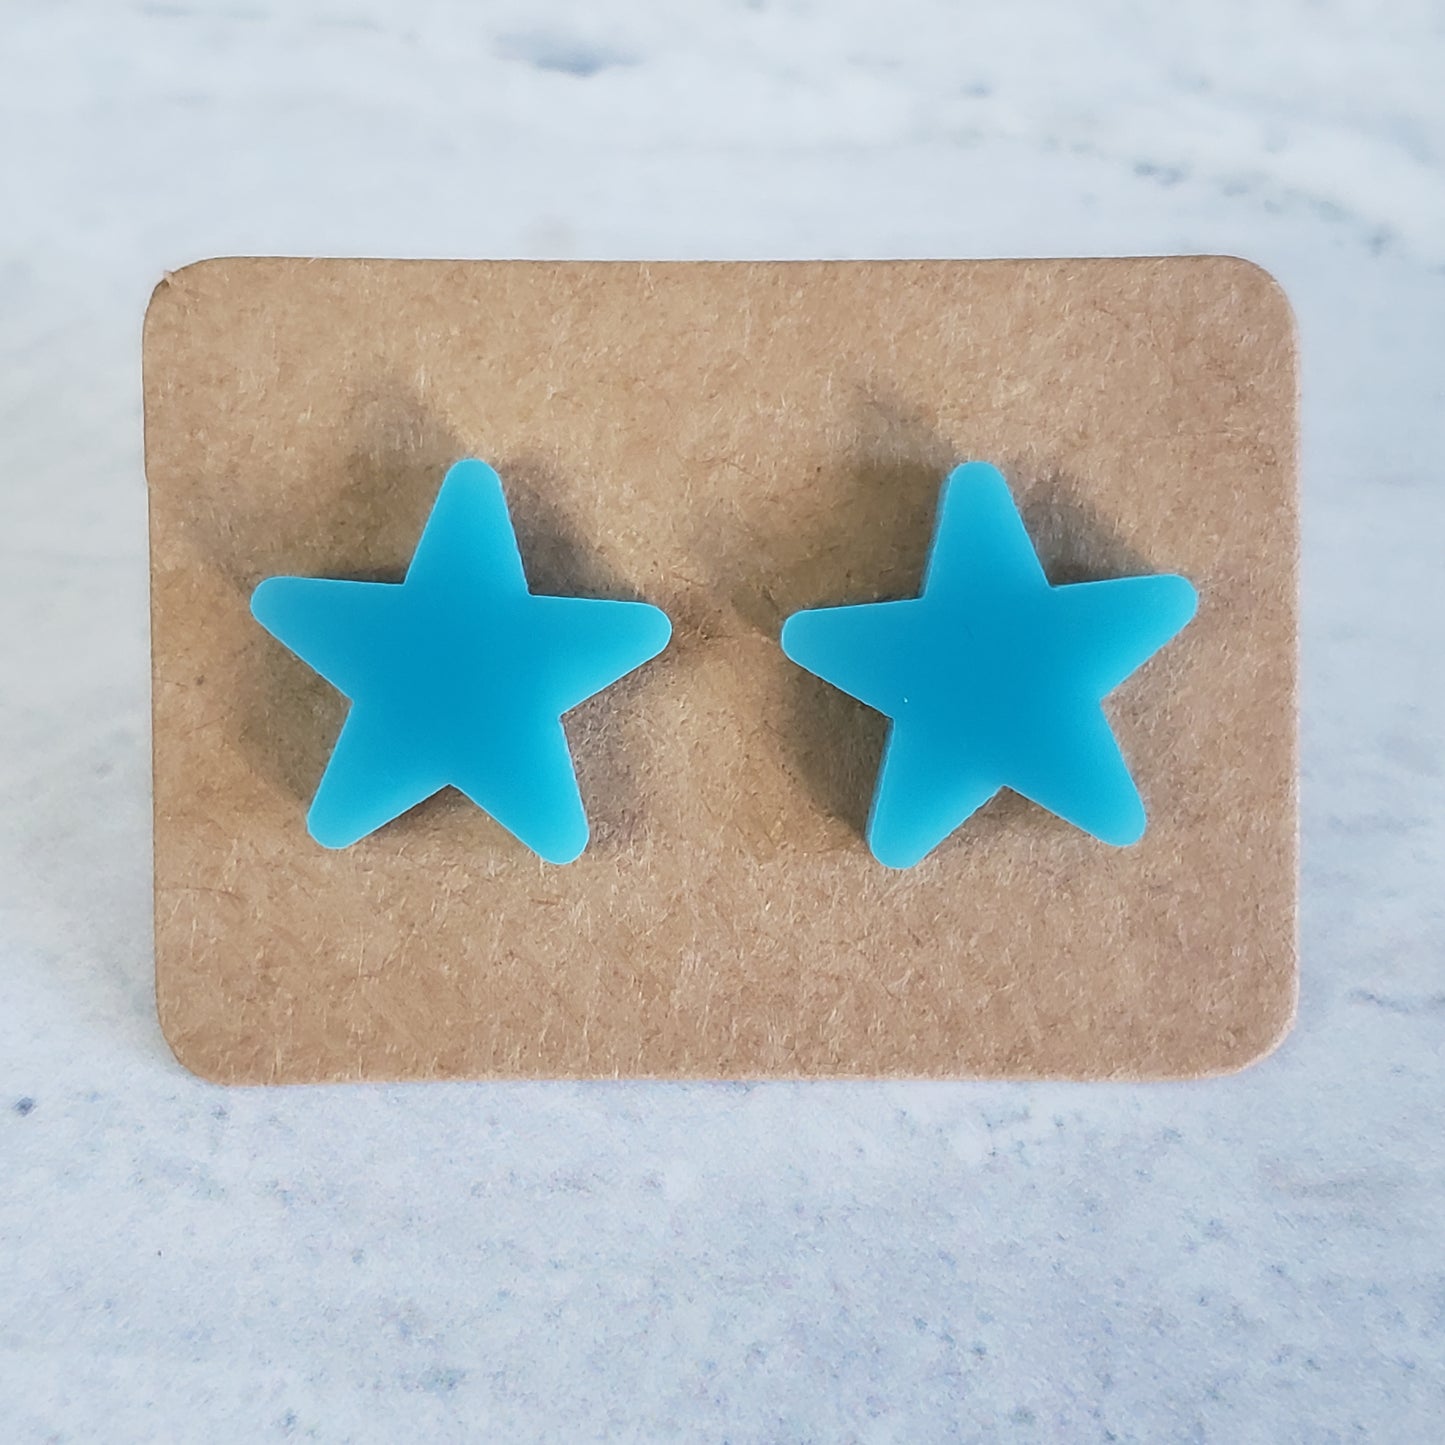 Breakfast blue star stud earrings on earring card